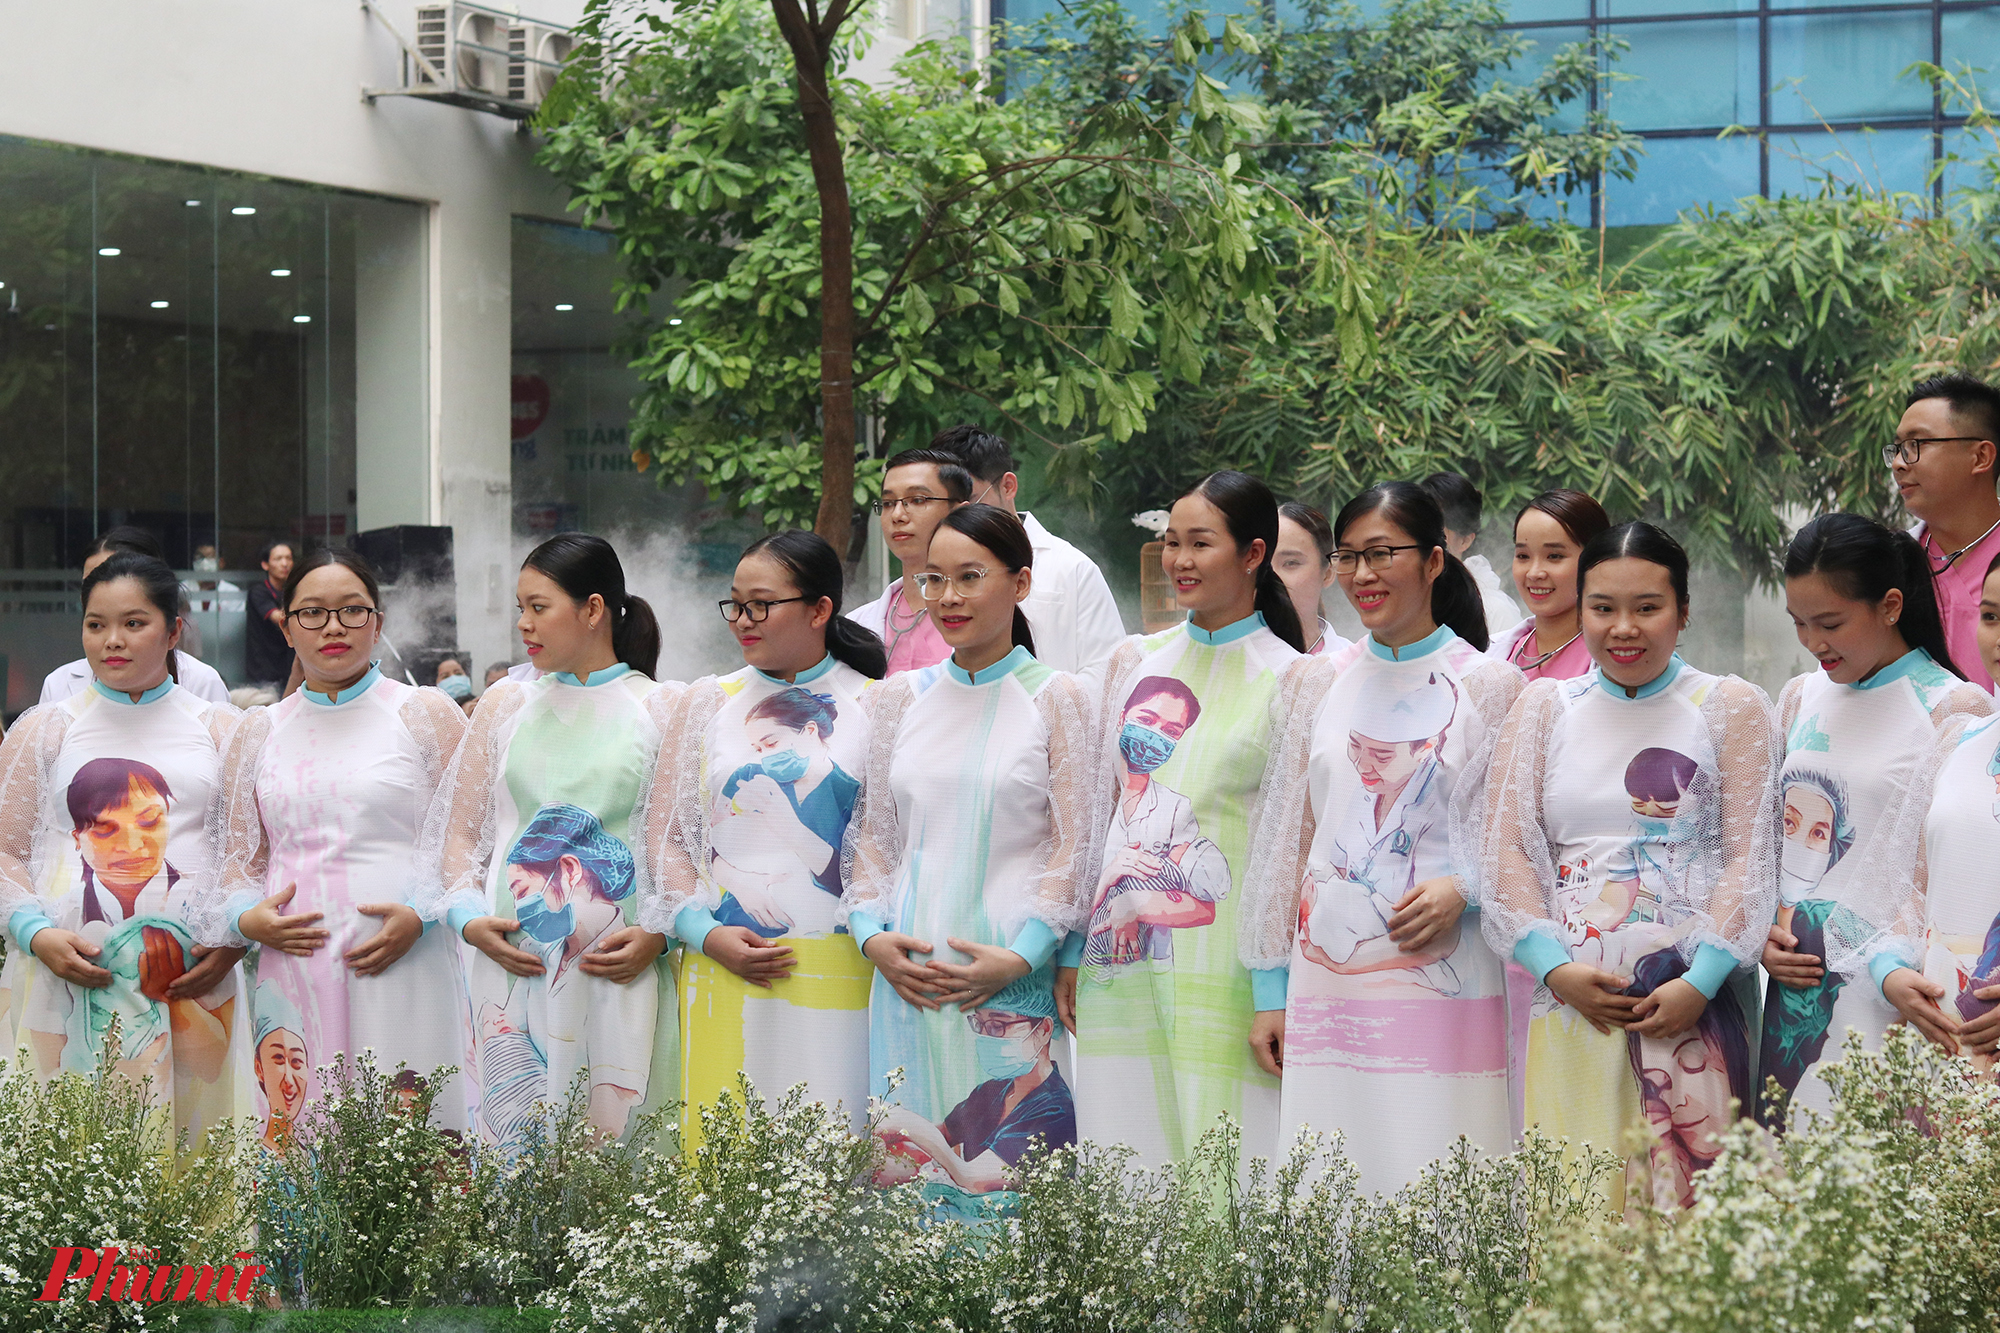 Trong chương trình có sự tham gia của những nhân viên y tế, y bác sĩ đang công tác tại Bệnh viện Hùng Vương. Trong phần cuối, 